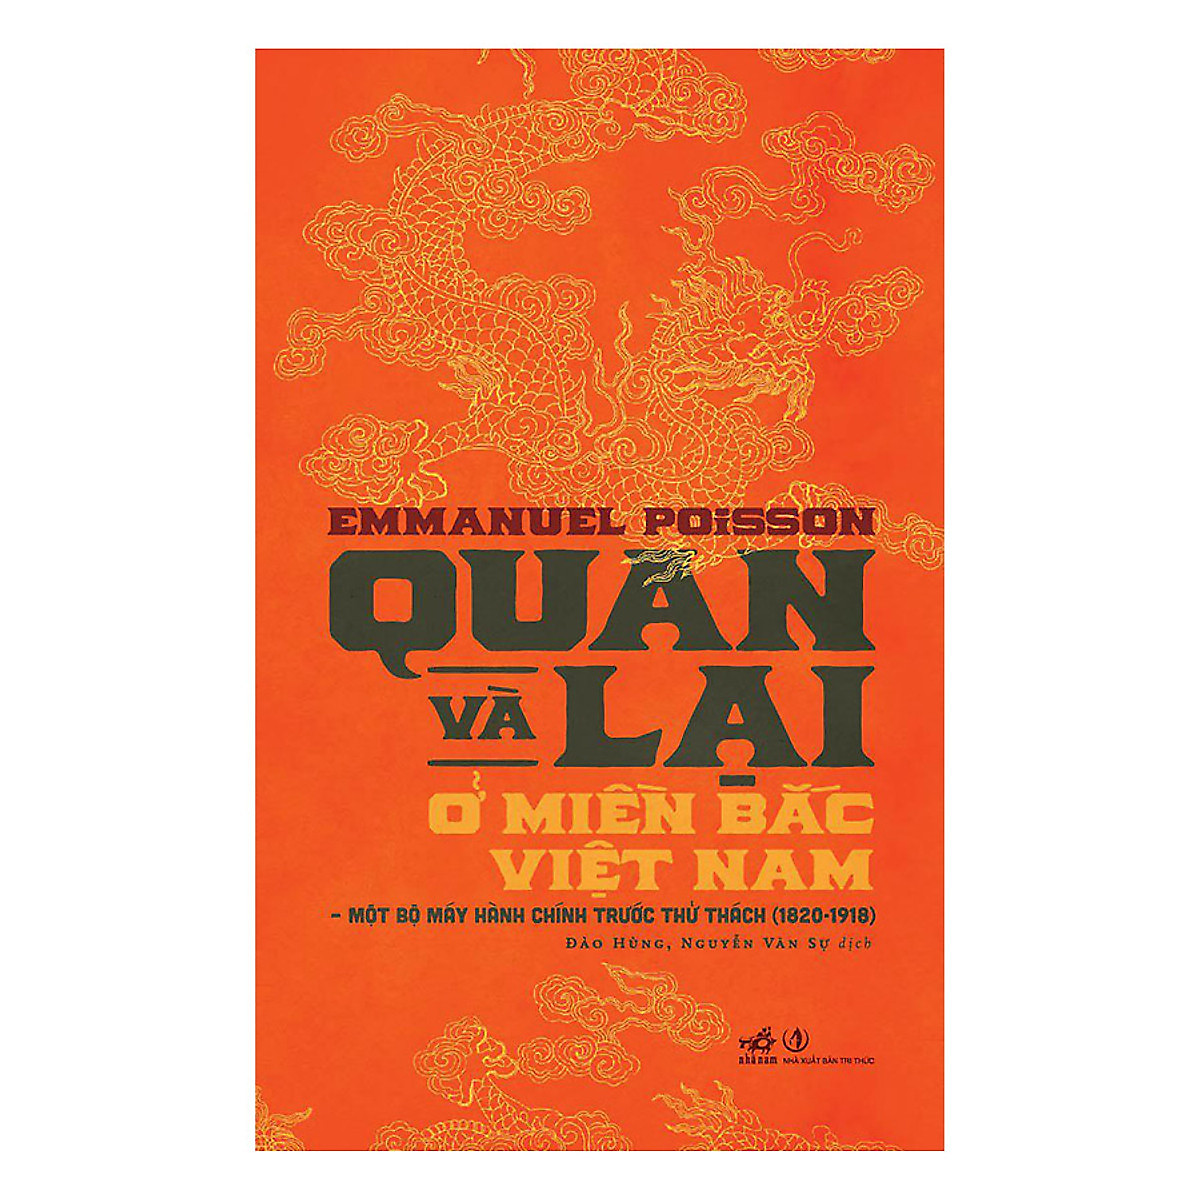 Combo 2 cuốn sách: Kinh tế và xã hội Việt nam dưới các vua triều Nguyễn + Quan và Lại ở miền bắc Việt Nam